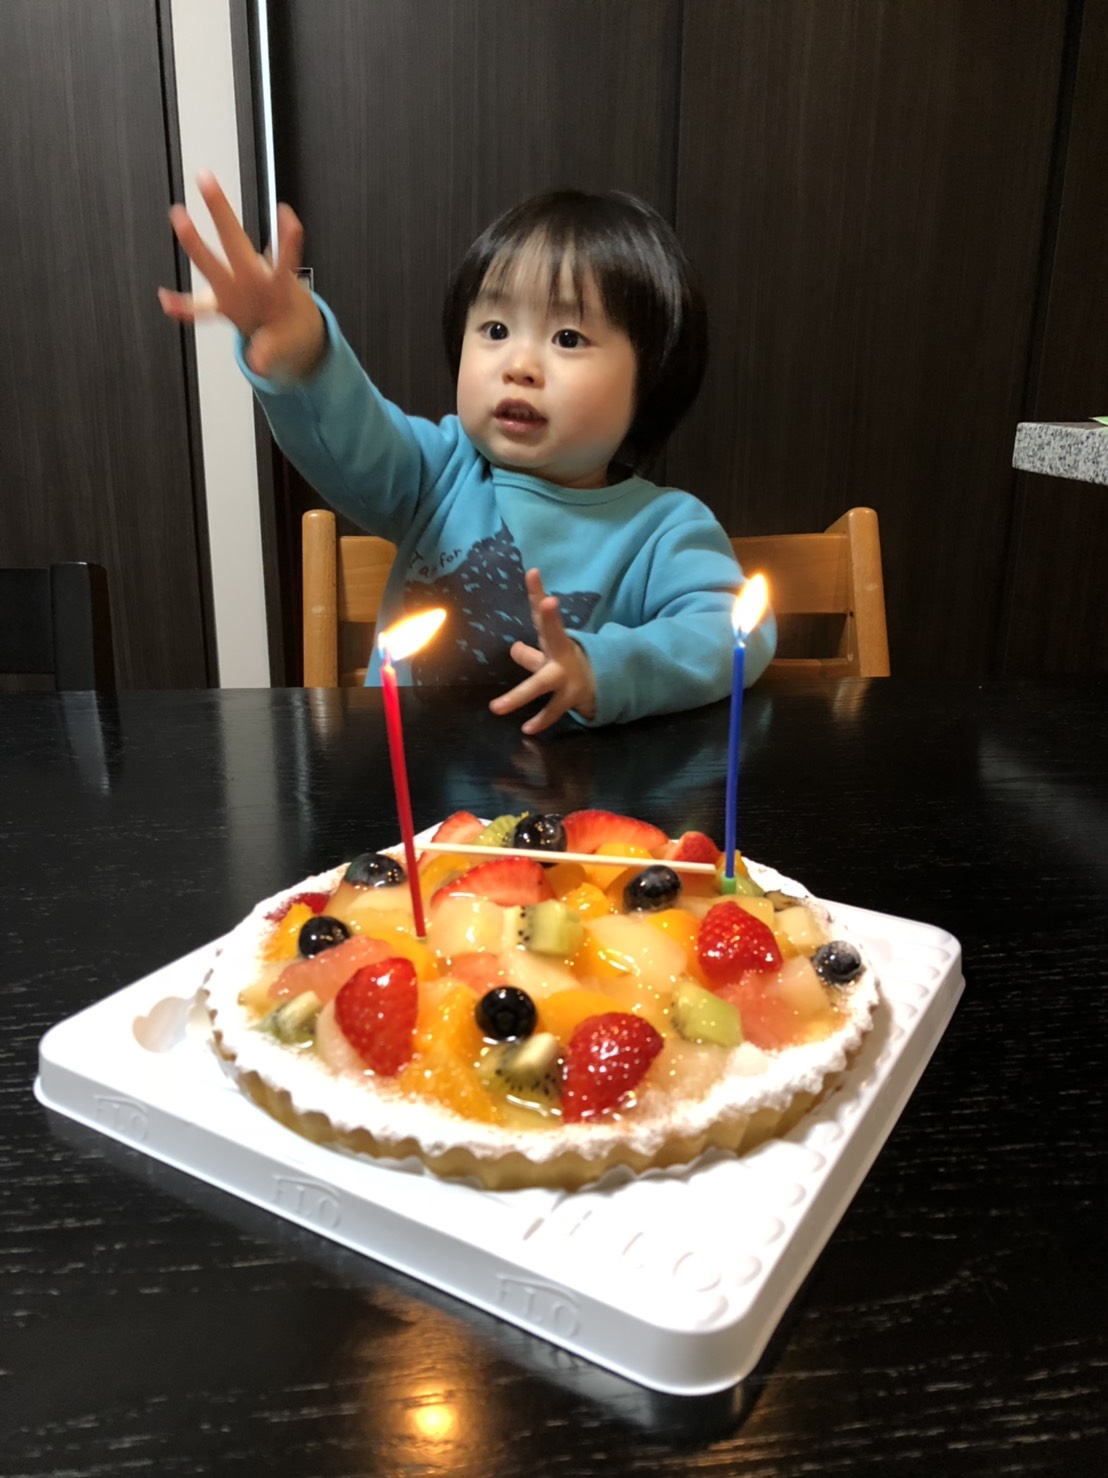 ２歳誕生日 高津 智文 子供から家族まで自然でおしゃれに残す人生の写真館 ライフスタジオ